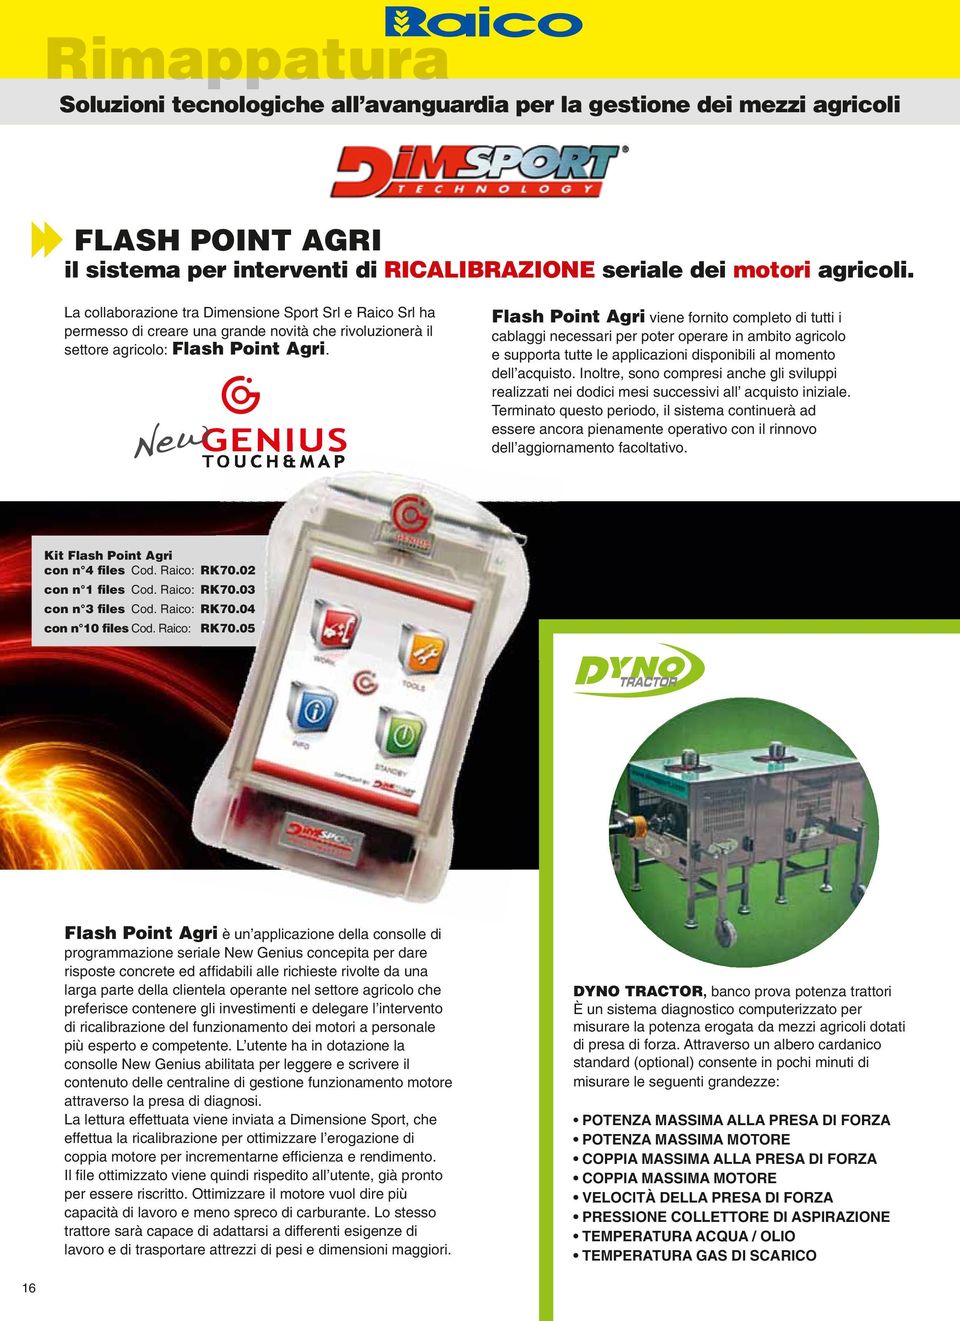 Flash Point Agri viene fornito completo di tutti i cablaggi necessari per poter operare in ambito agricolo e supporta tutte le applicazioni disponibili al momento dell acquisto.